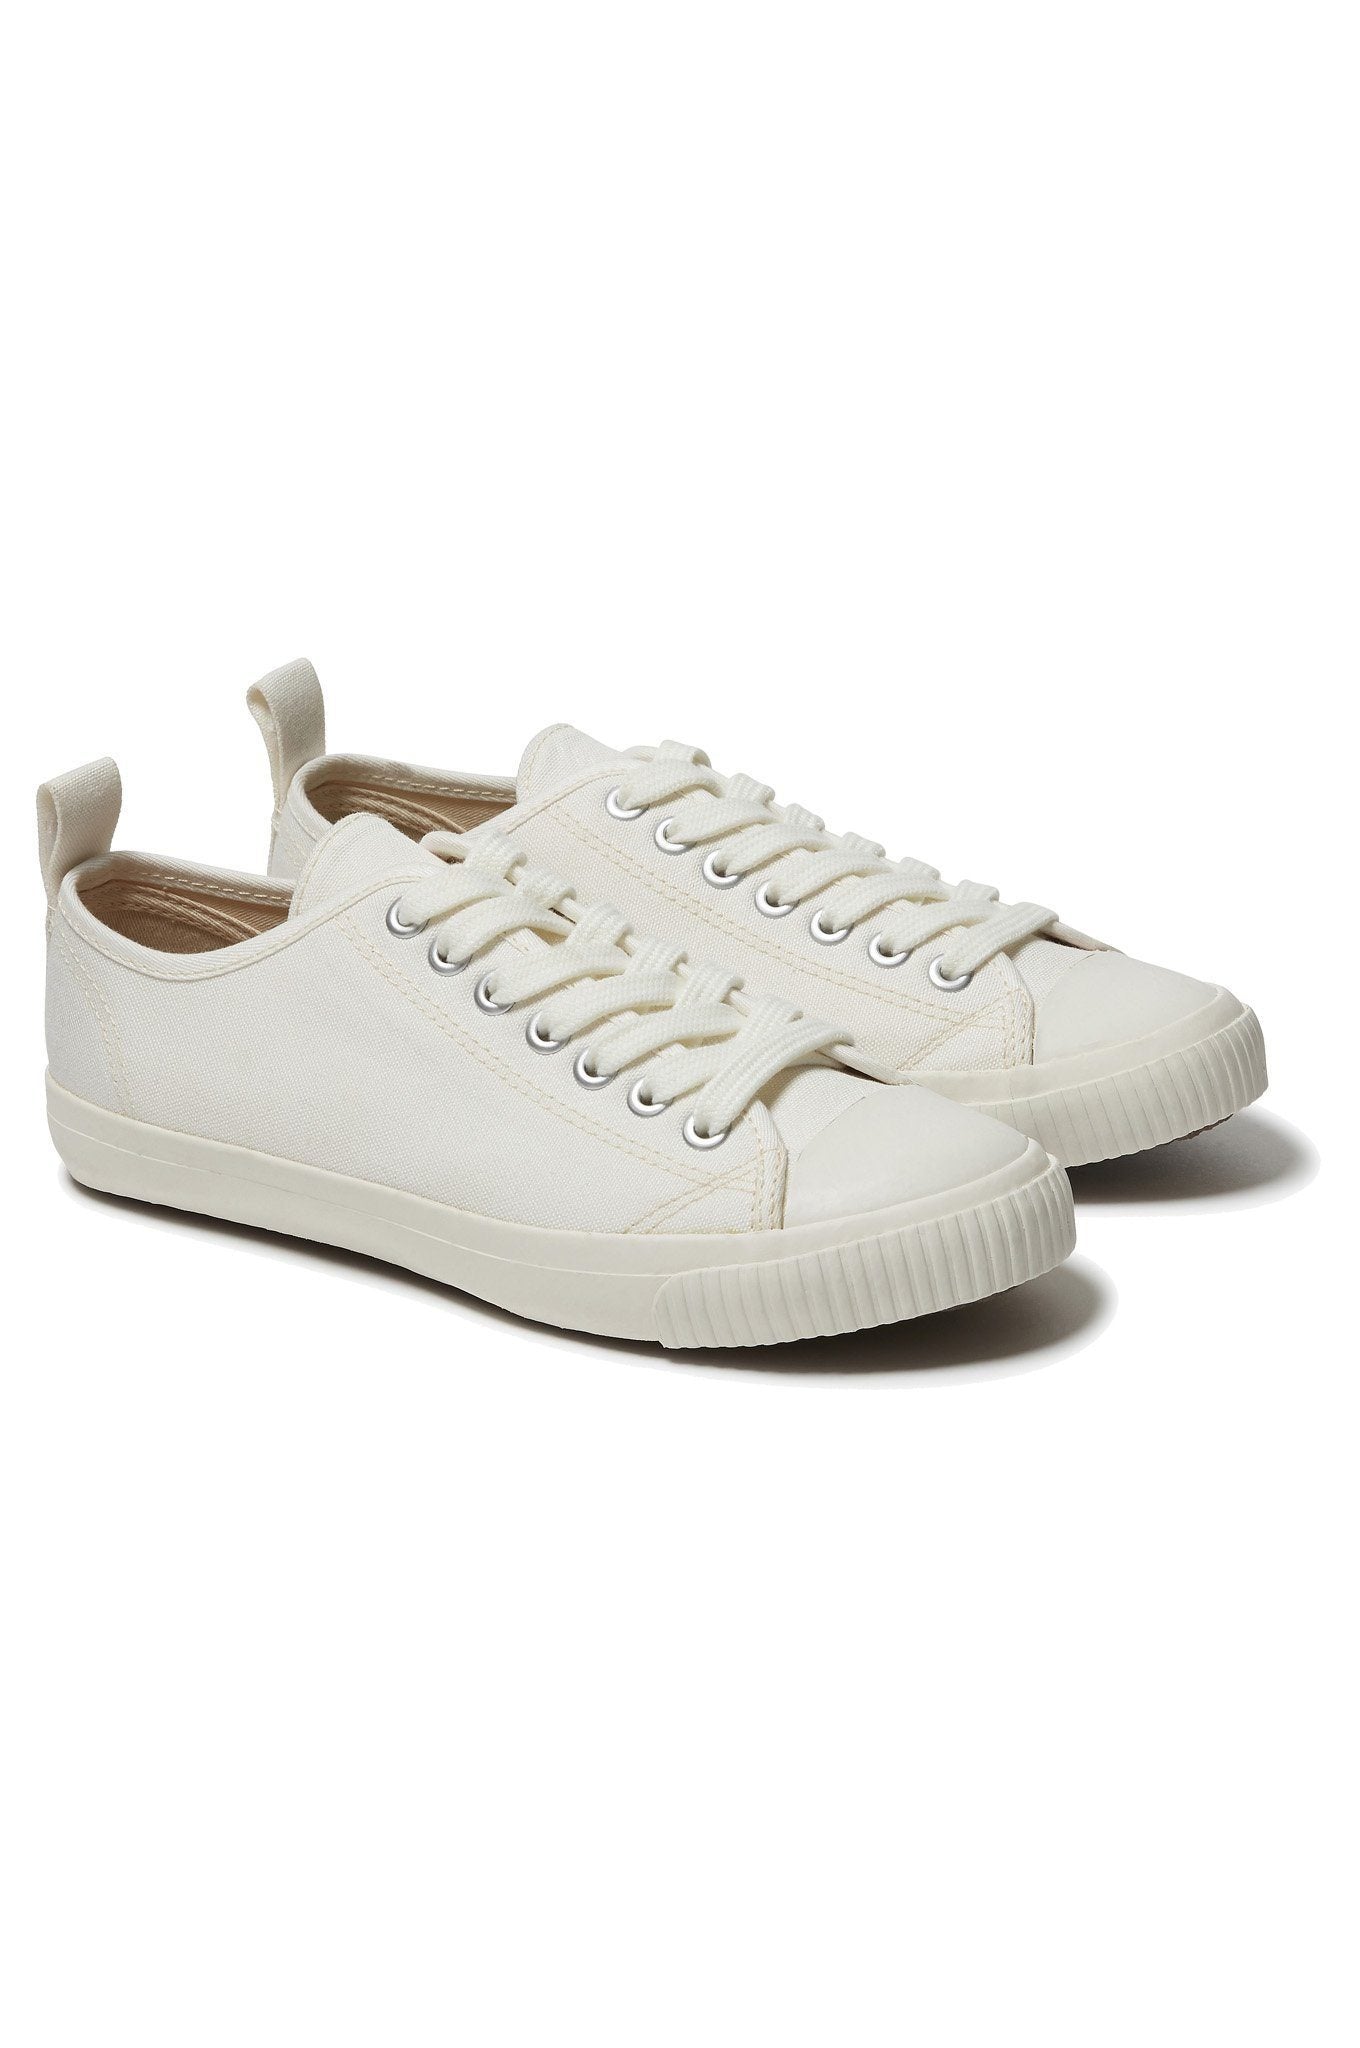 Komodo Shoes Unisex Eco Sneako in White